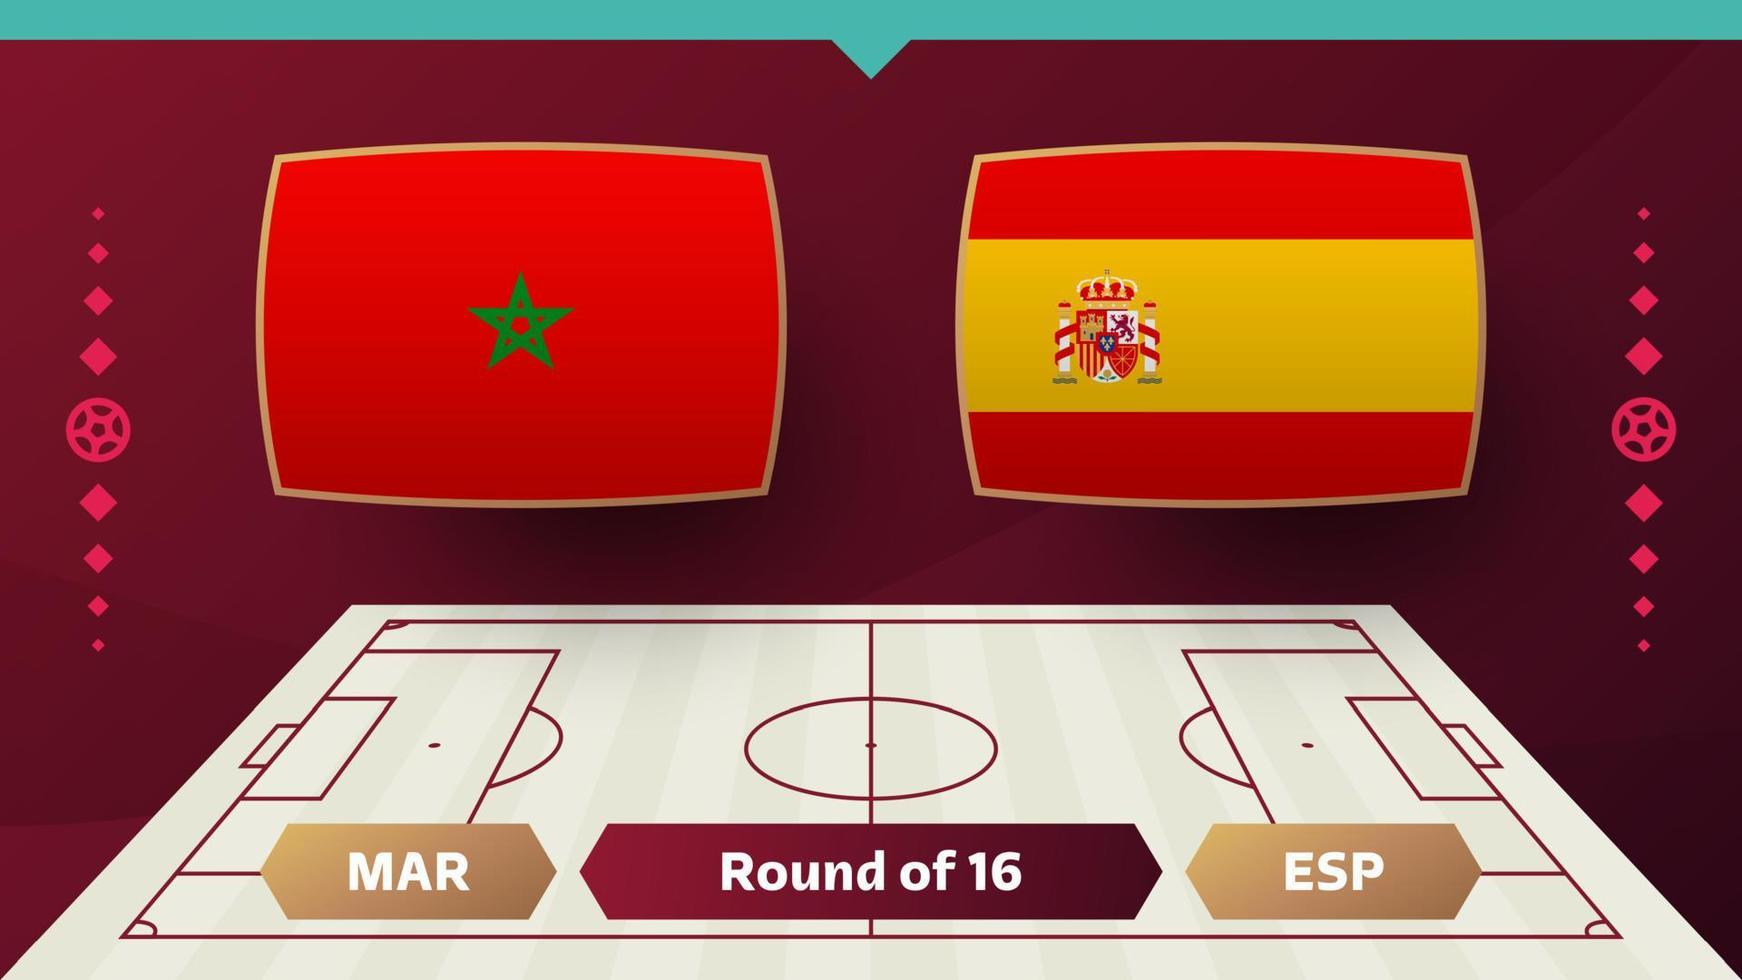 marocko Spanien slutspel runda av 16 match fotboll 2022. 2022 värld fotboll mästerskap match mot lag intro sport bakgrund, mästerskap konkurrens affisch, vektor illustration